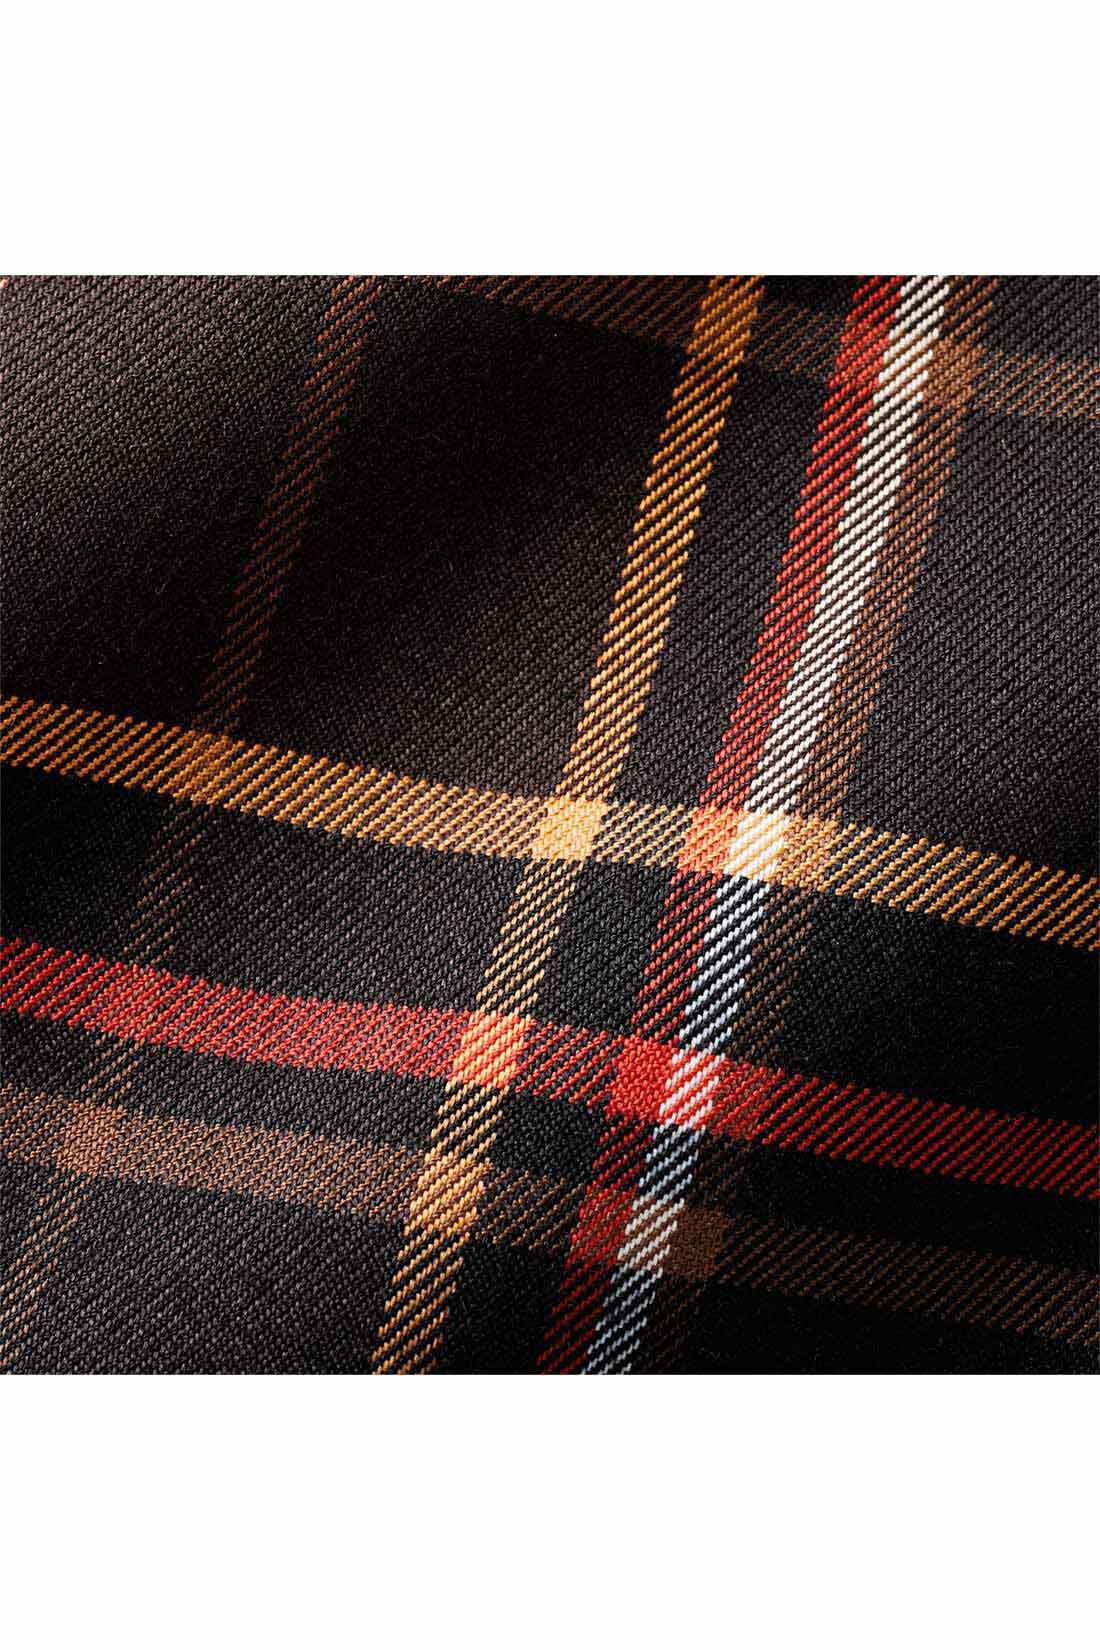 IEDIT[イディット]　大人チェック柄のすそ切り替えマーメイドスカート〈ブラウン〉|秋口から着やすいハリ感のある布はく素材。